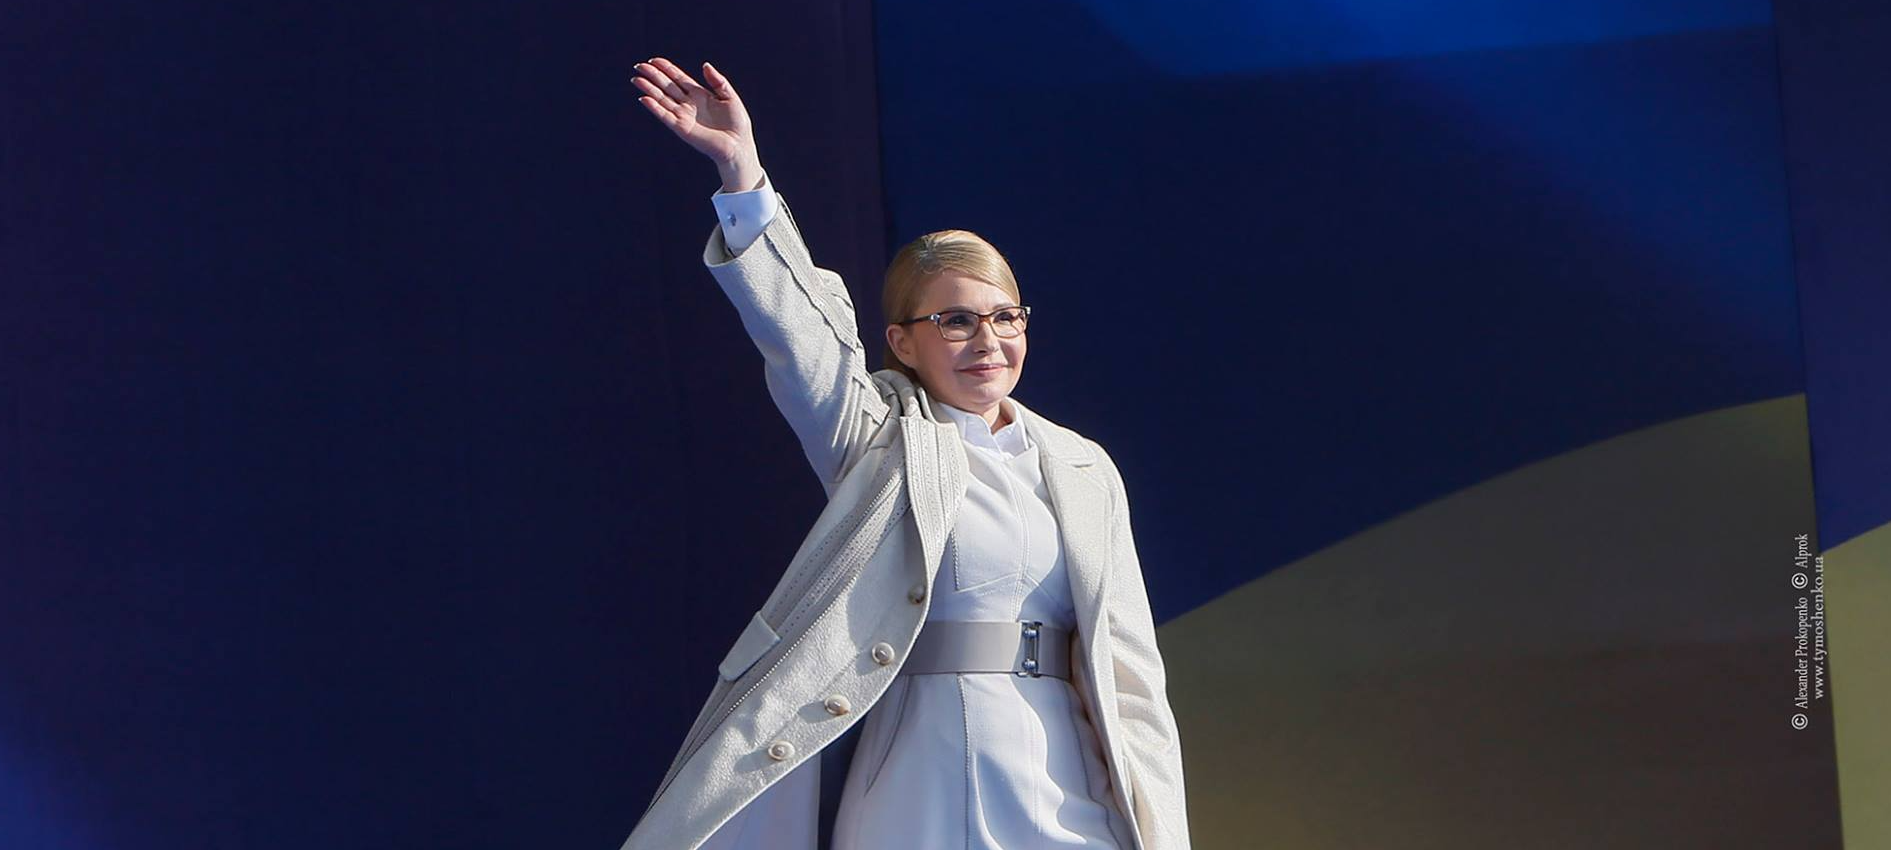 На себе Тимошенко грошей на шкодує: якщо одяг, то Chanel; якщо прикраси, то Himalia Pearls, як у княгині Монако; якщо презентація «Нового курсу України», то помпезно, зі стриптизерами і за 22 млн грн